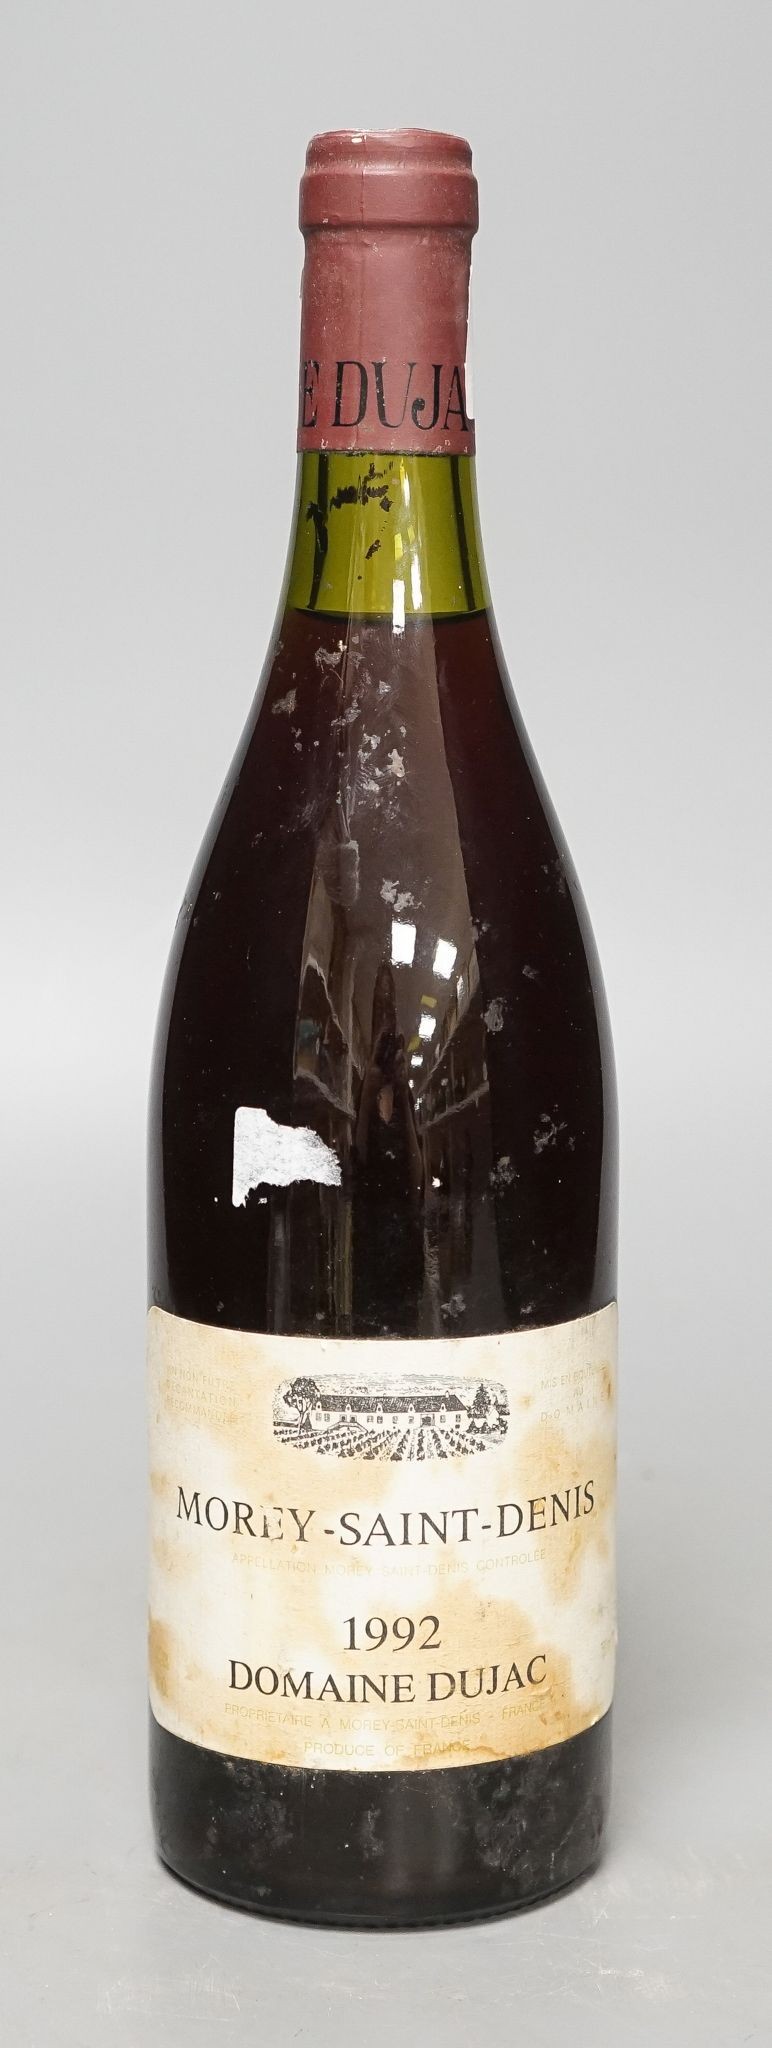 One bottle of Morey-St-Denis, 1992